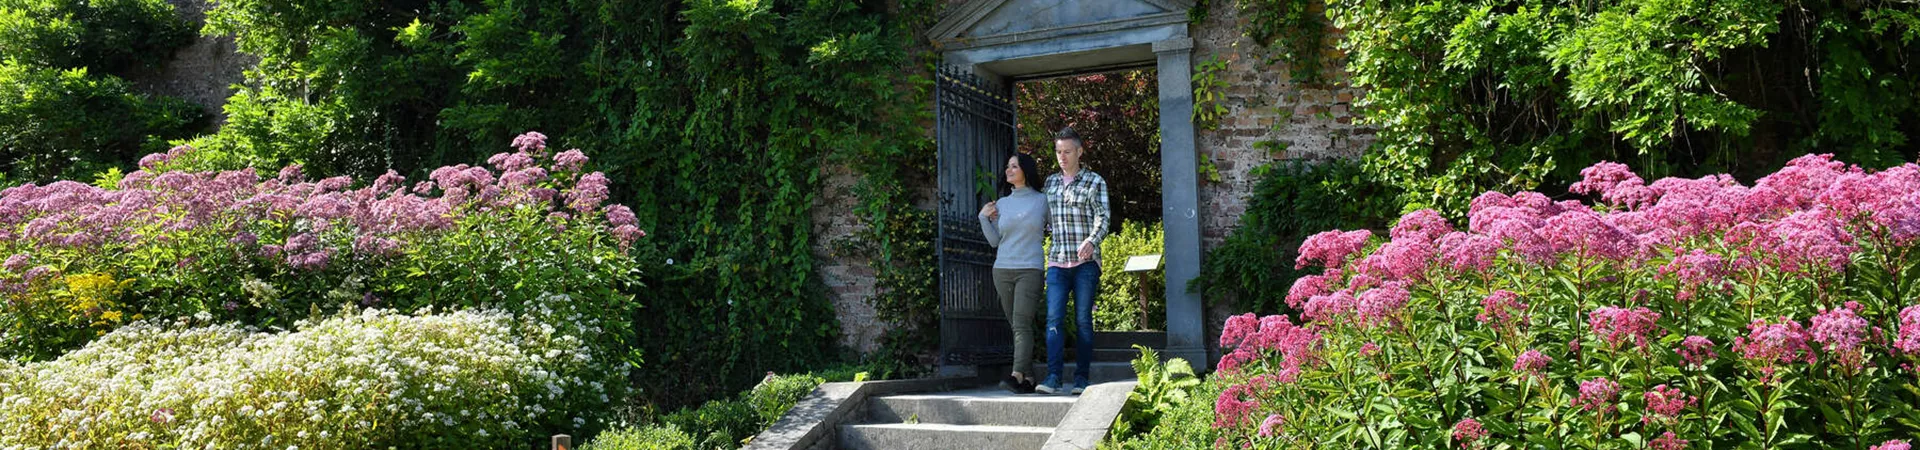 Couple exploring Mount Congreve Gardens